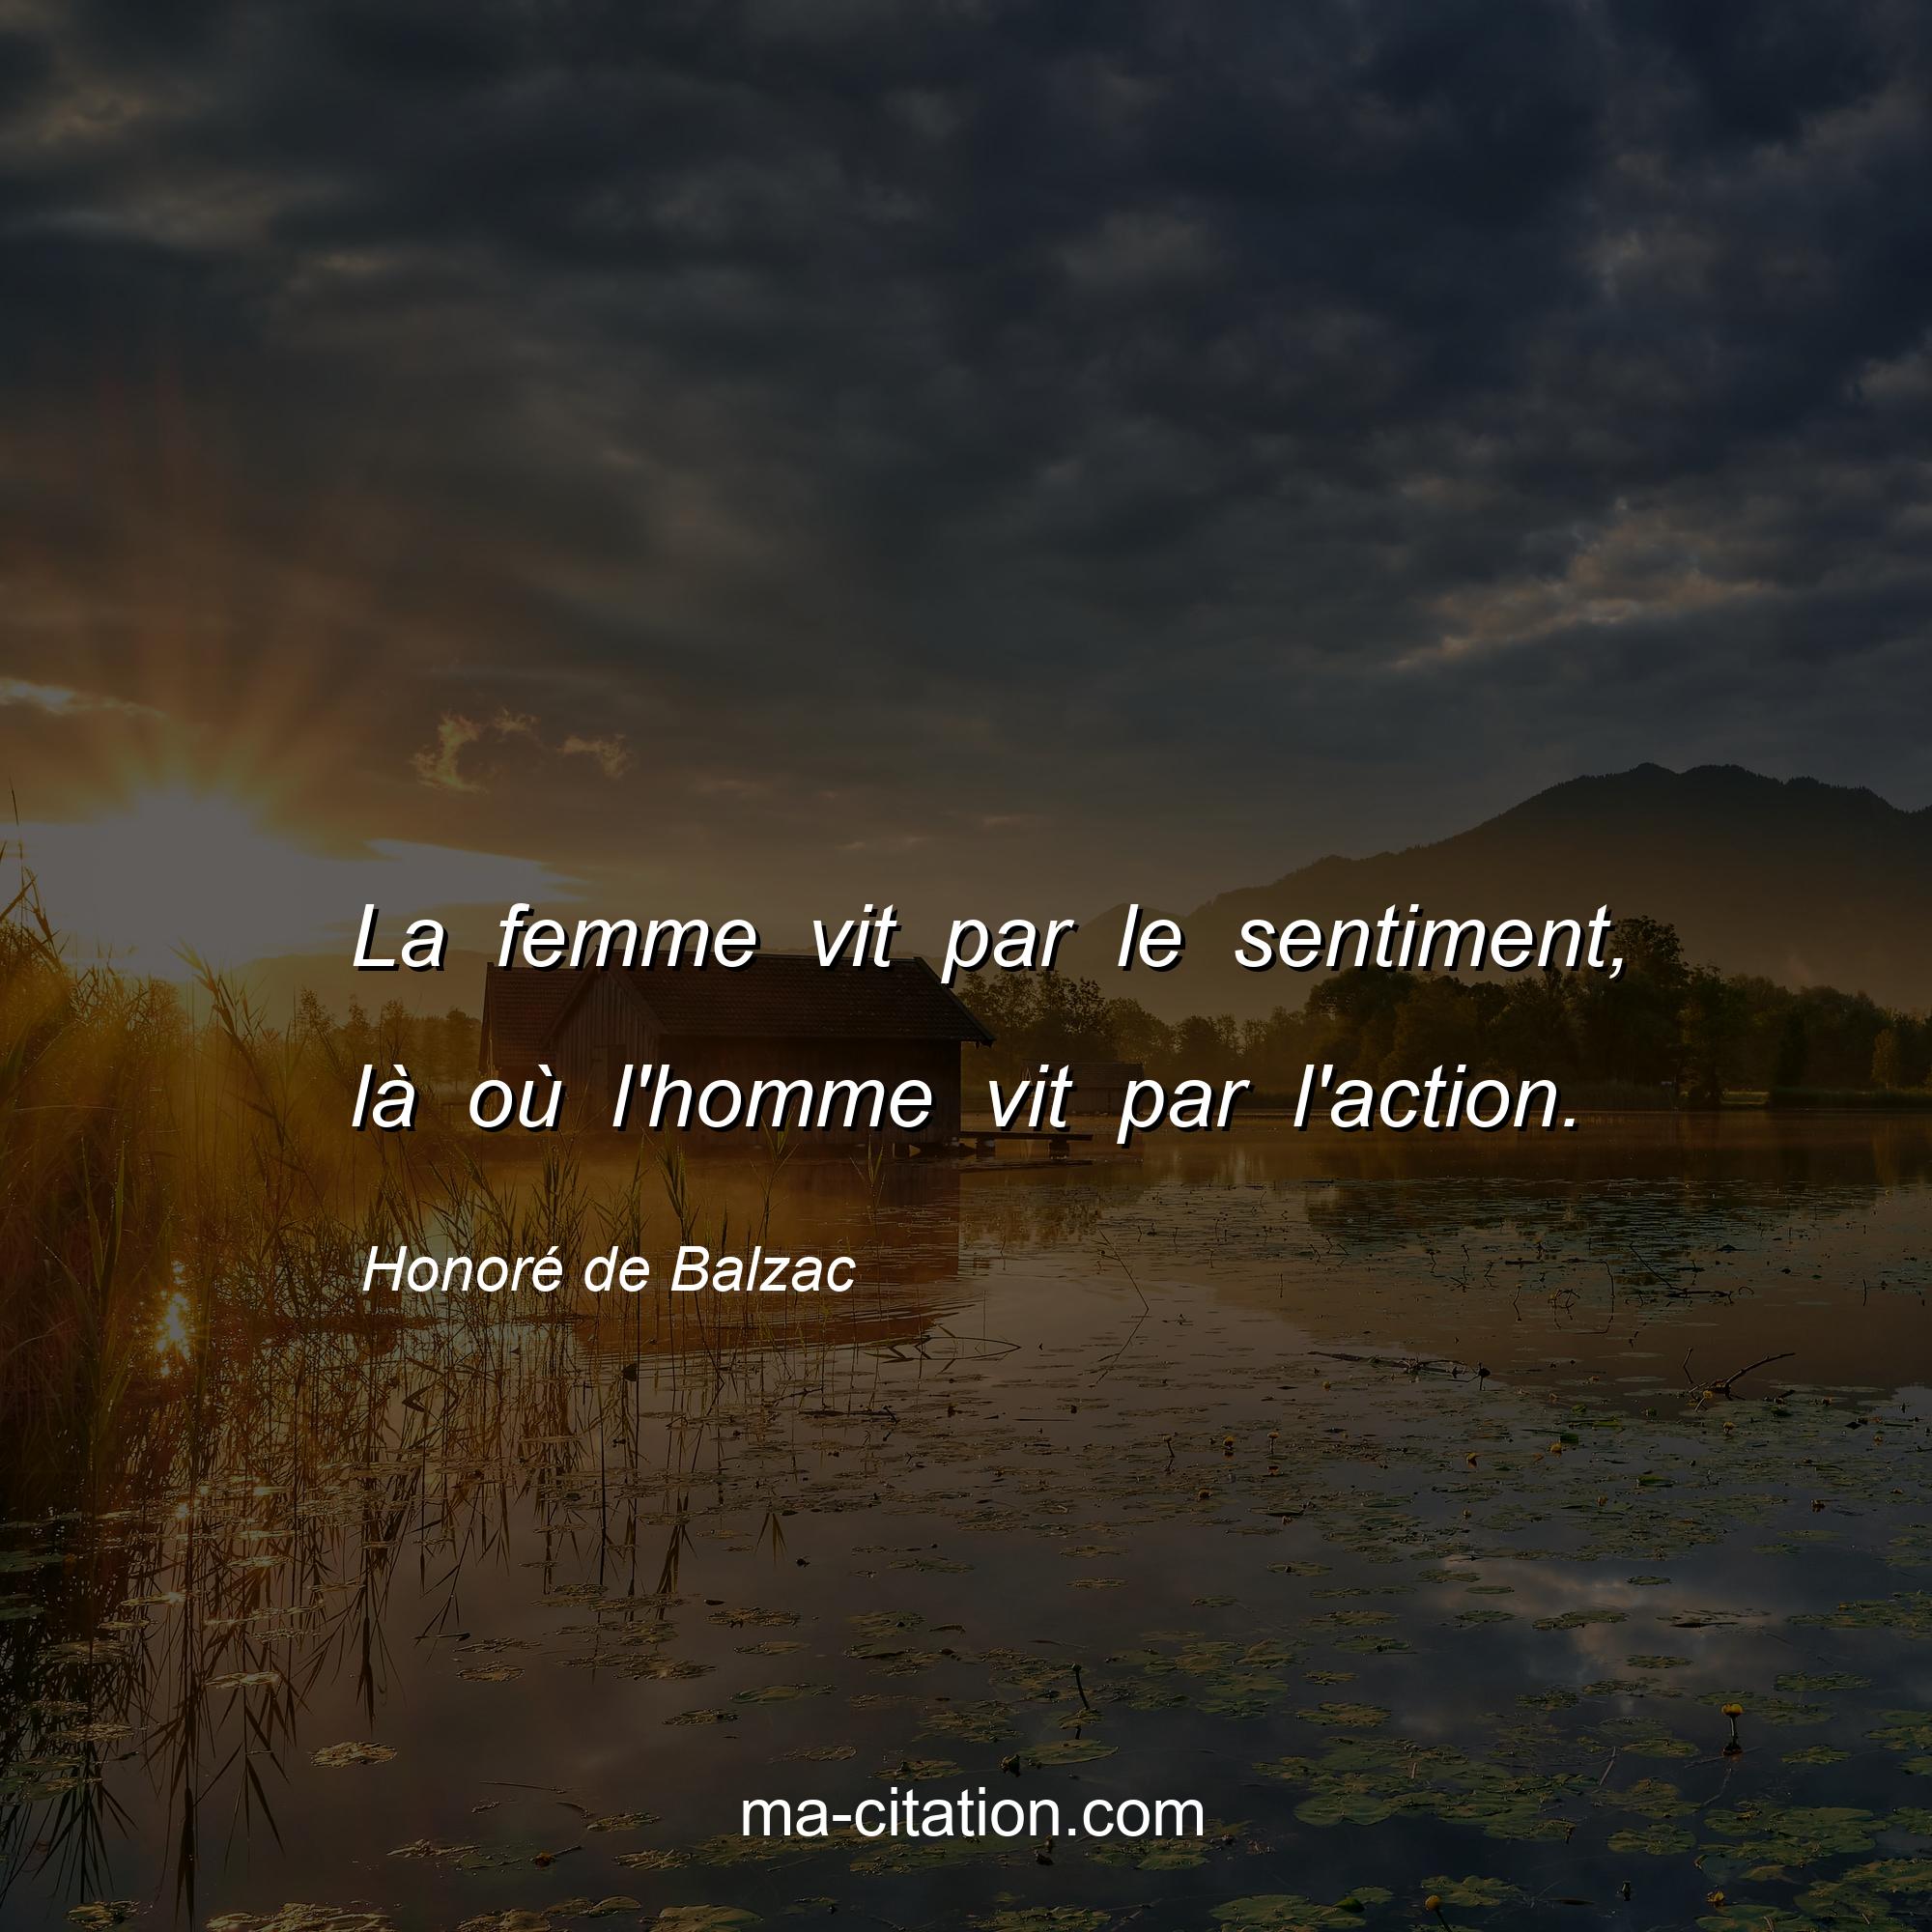 Honoré de Balzac : La femme vit par le sentiment, là où l'homme vit par l'action.